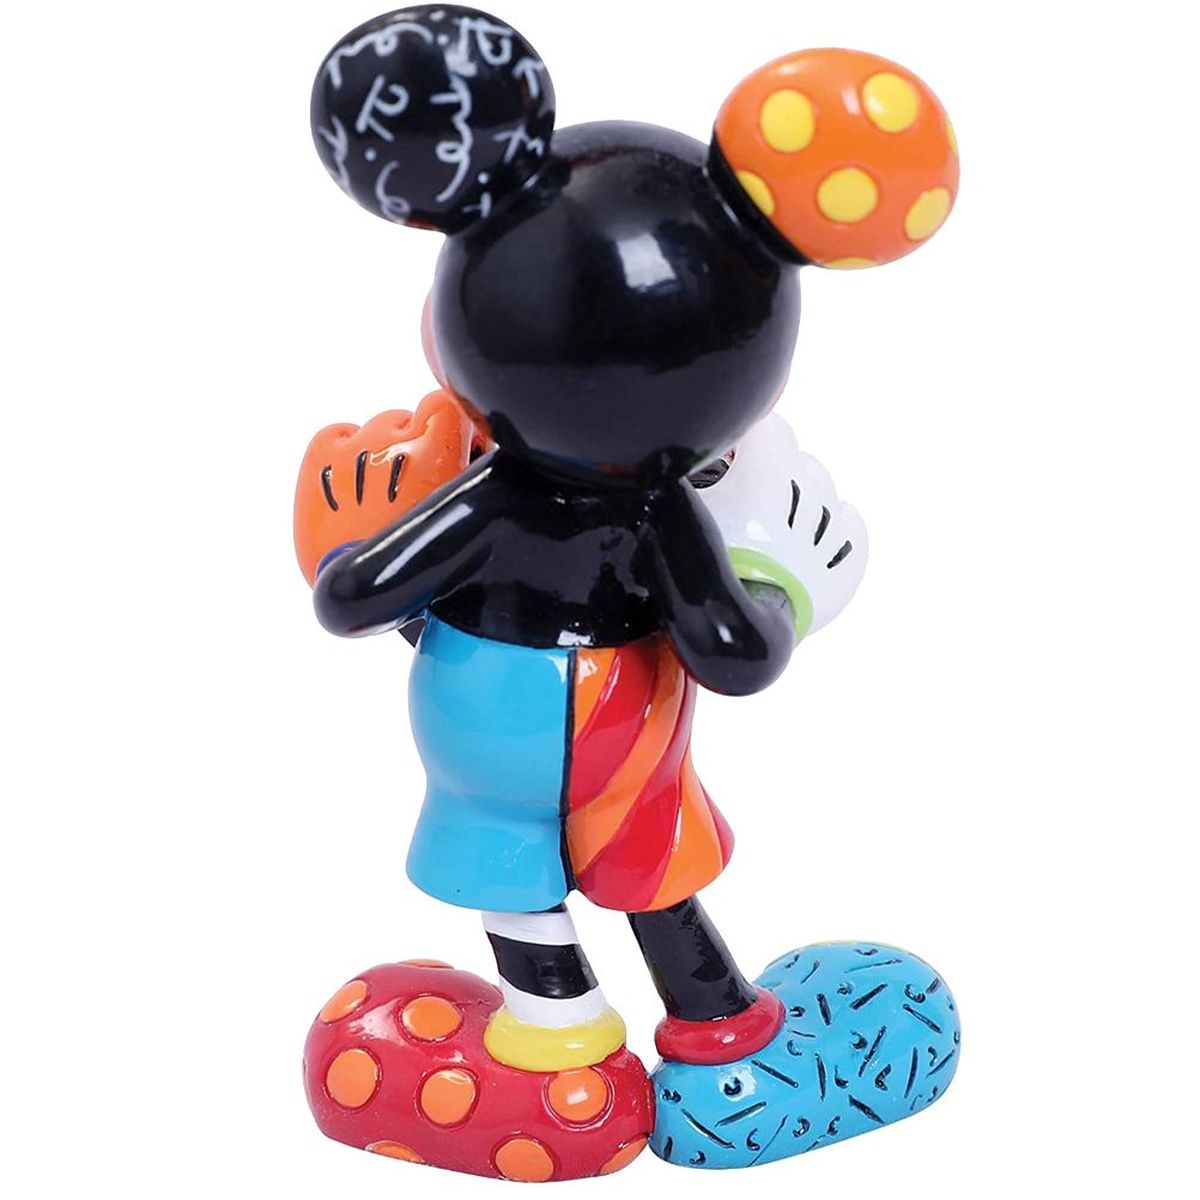 Mickey Figure Collection by Romero Britto